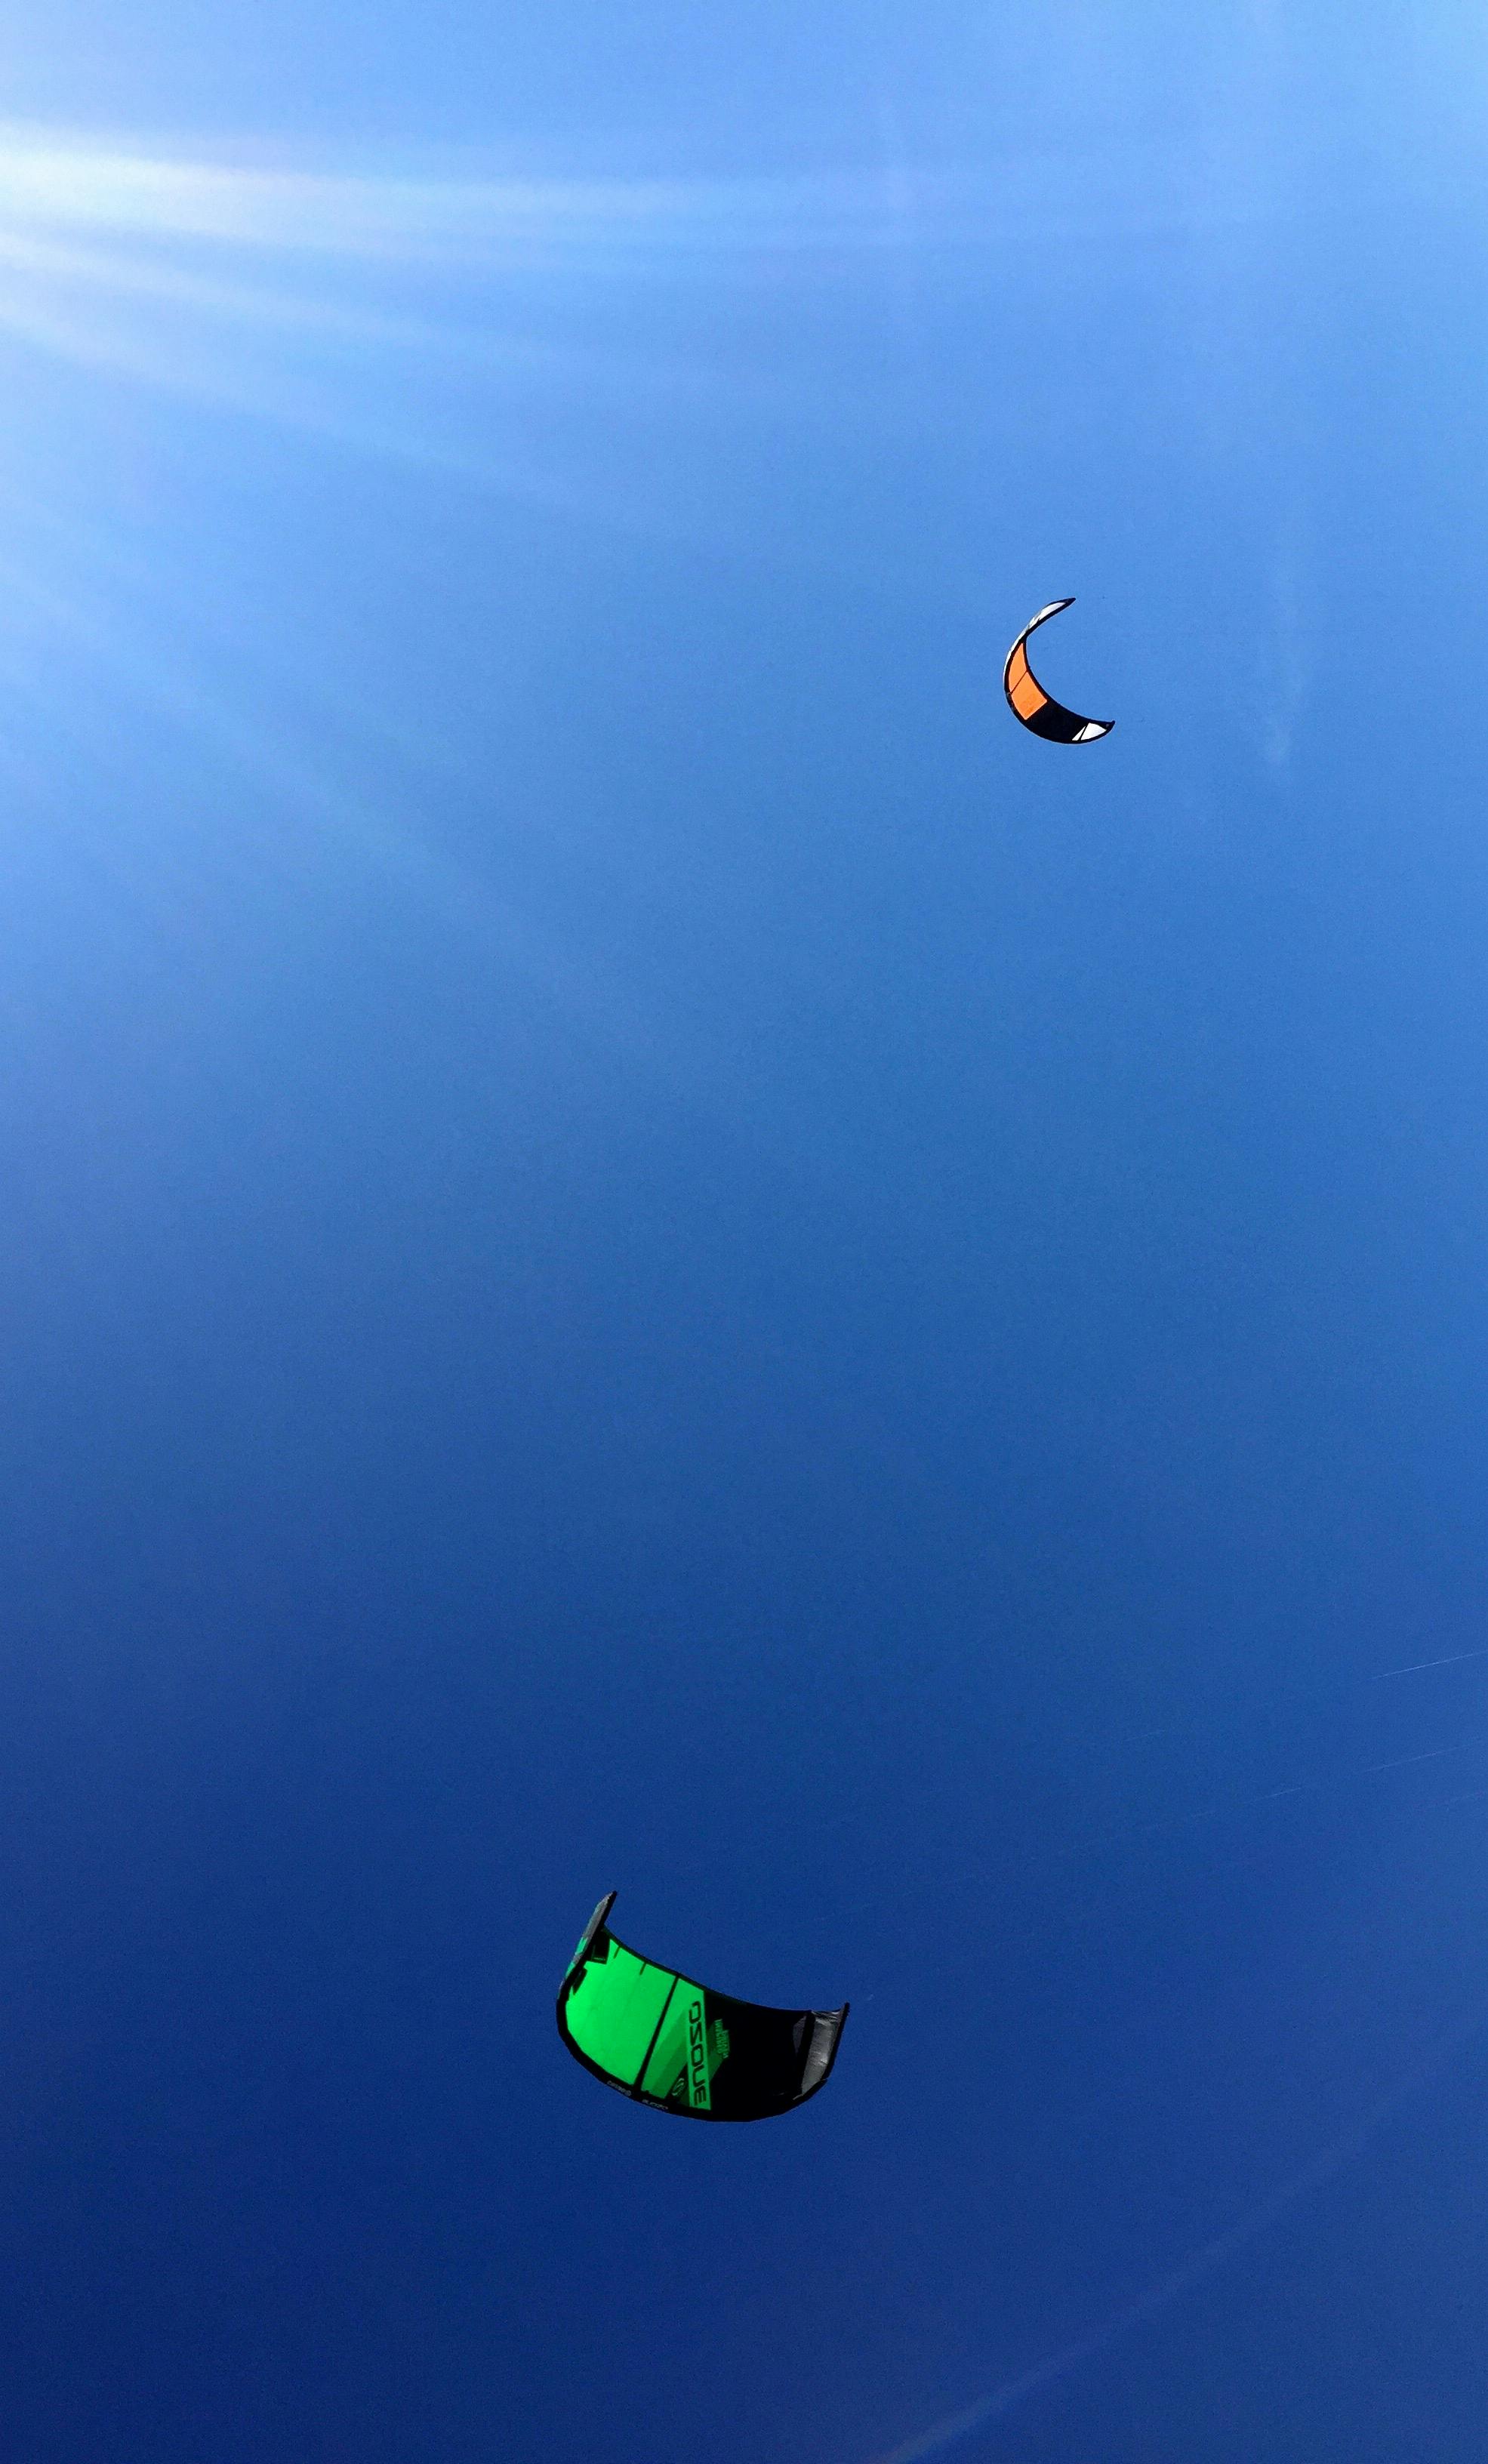 Free stock photo of Flying kite, kite, kites